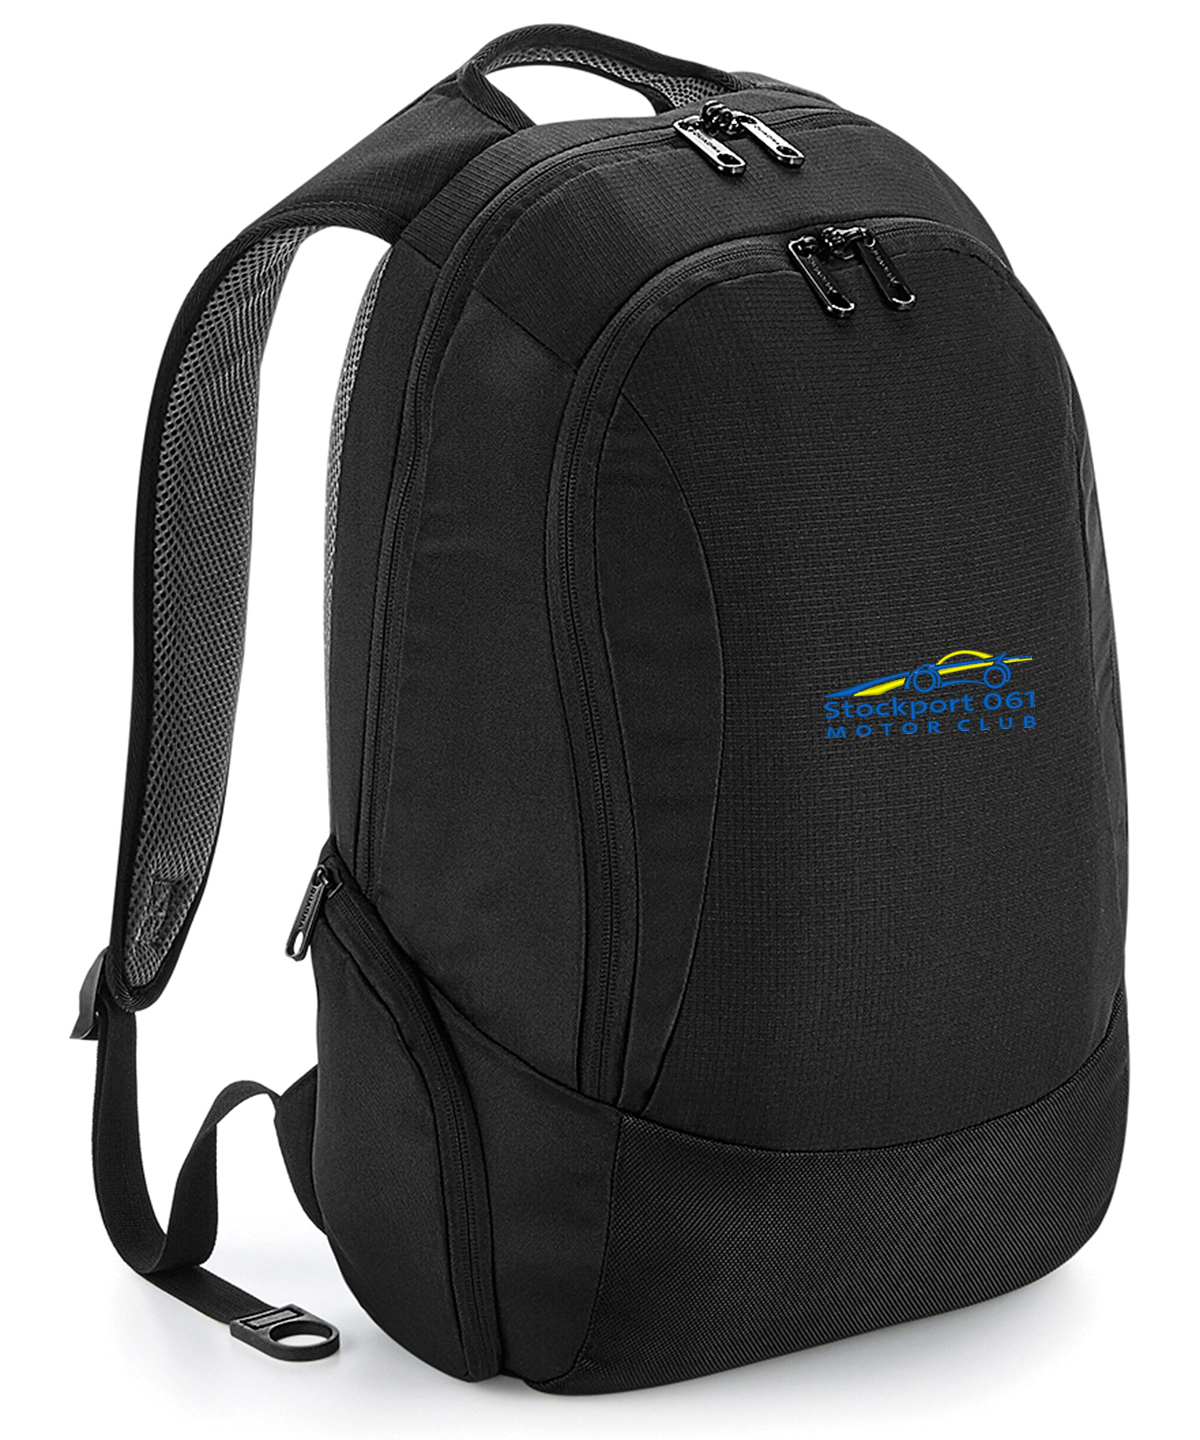 Bag Laptop – STK061